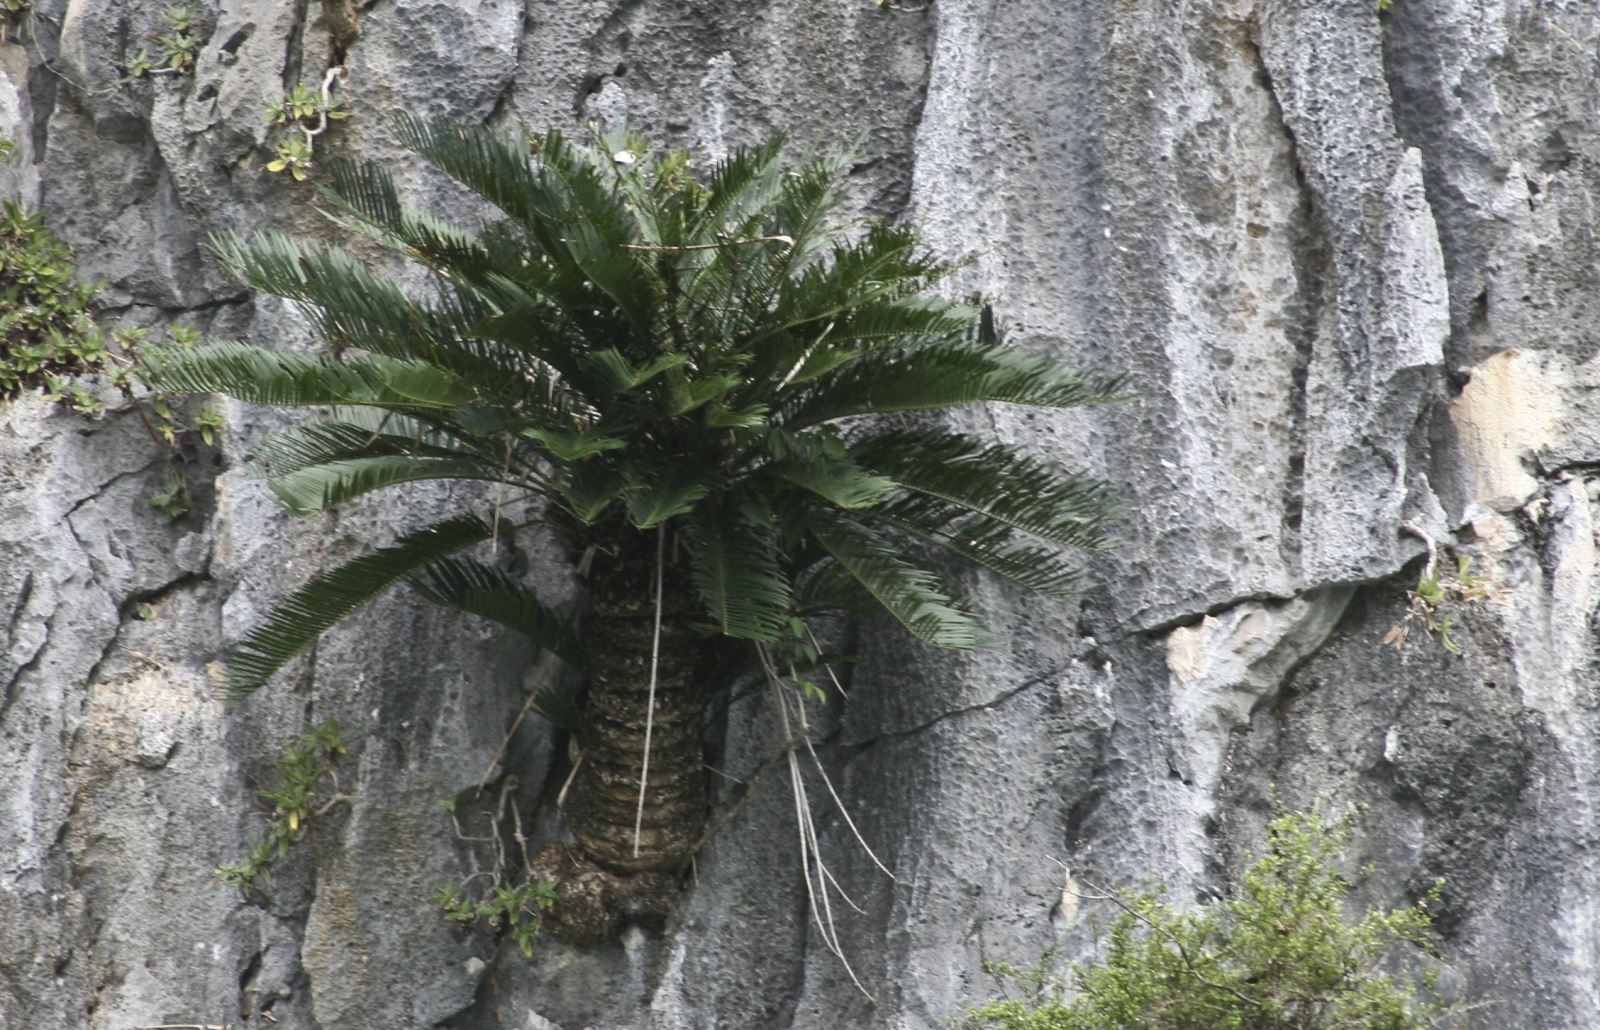 Thực vật đặc hữu sinh tồn trên vách đá Hạ Long